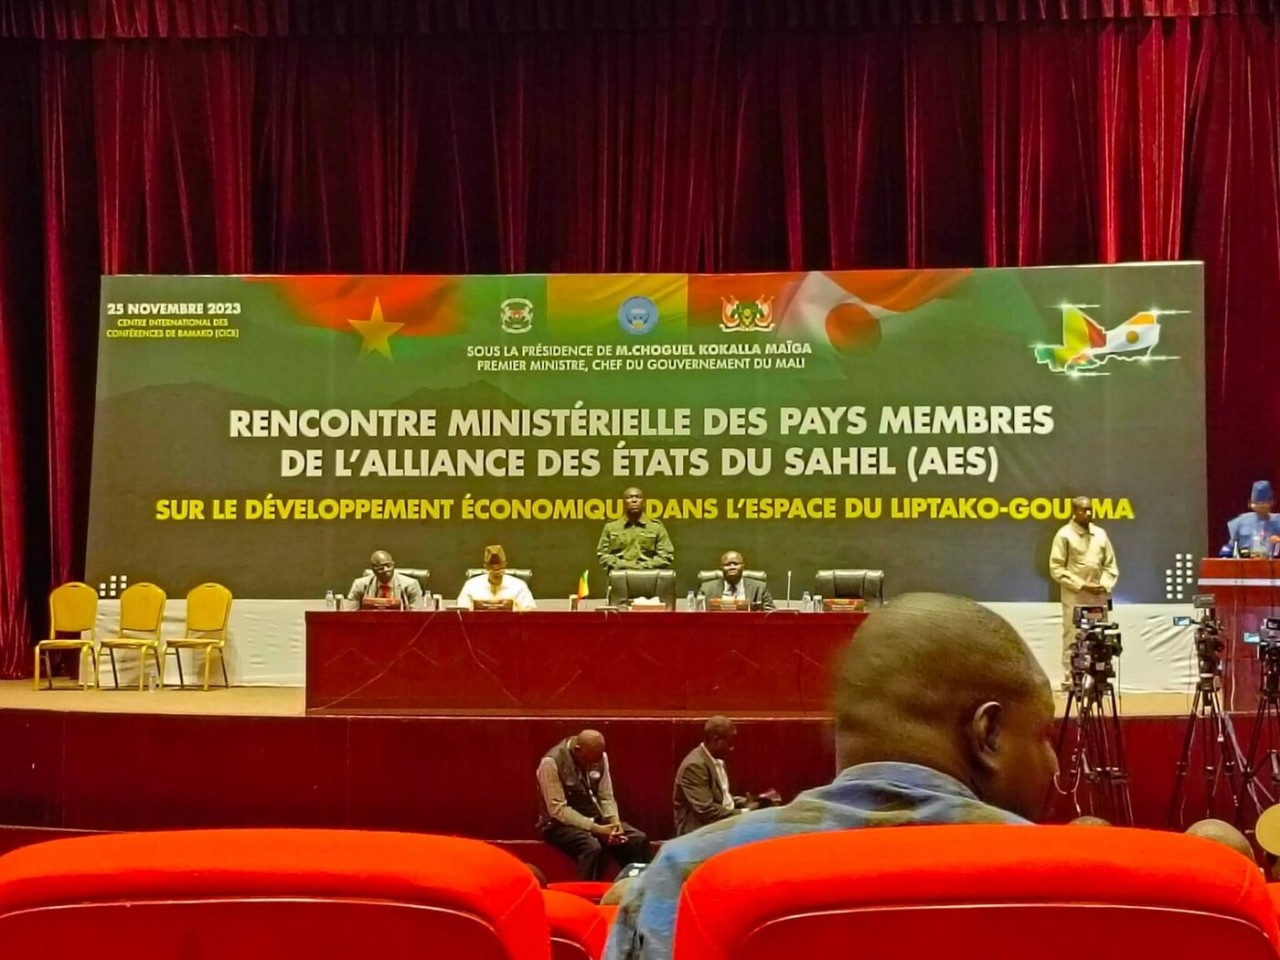 Các bộ trưởng kinh tế và thương mại cùng chuyên gia của Ba quốc gia Tây Phi gồm Burkina Faso, Mali và Niger nhóm họp tại Bamako, thủ đô của Mali, ngày 25/11. (Nguồn: Wadr)